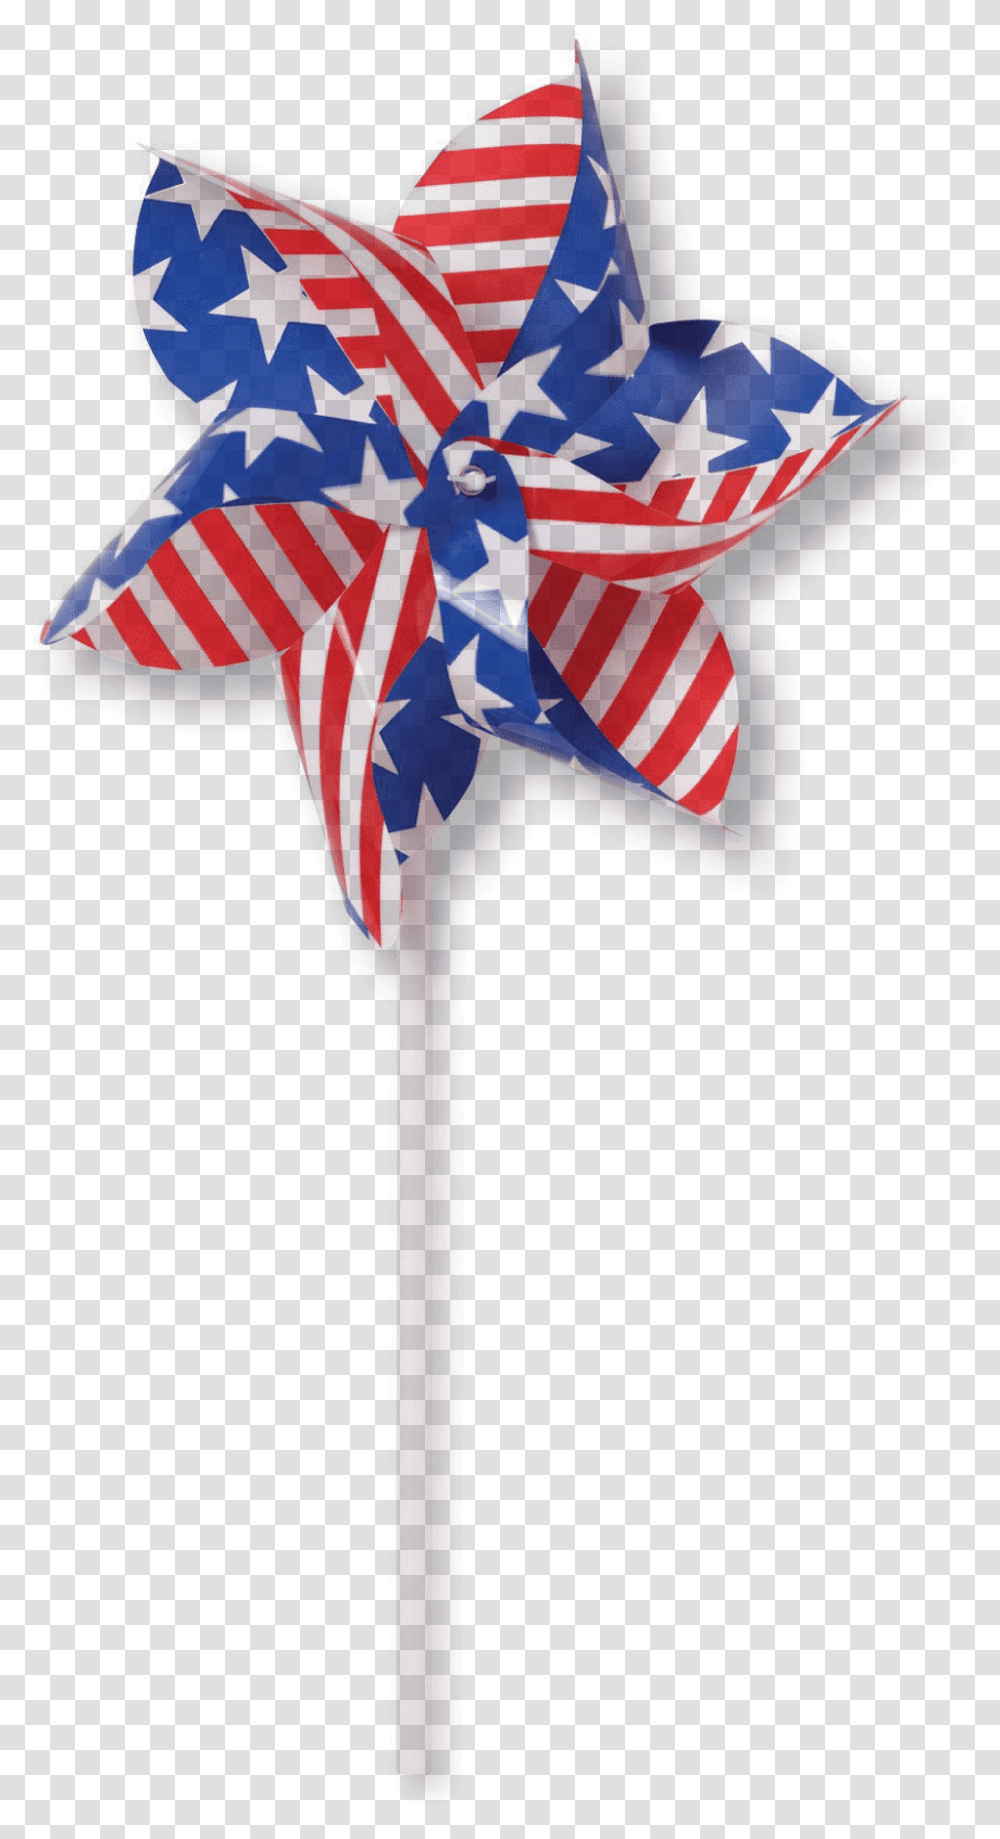 Patriotic Pinwheel Creative Converting Pinwheel Patriotic, Hammer, Tool, Star Symbol Transparent Png